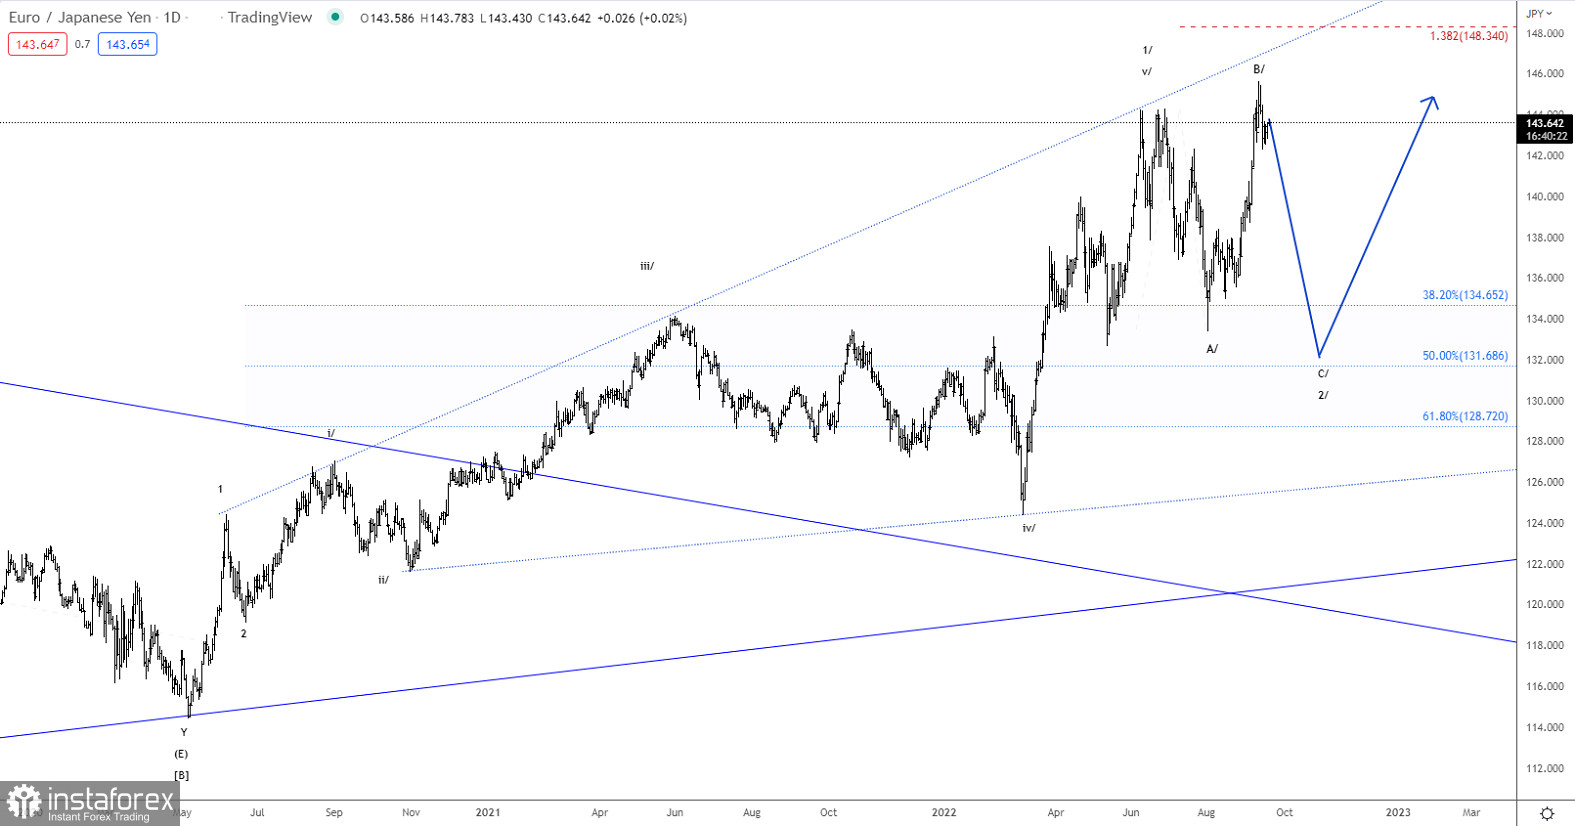 Elliott wave analysis of EUR/JPY for September 20, 2022